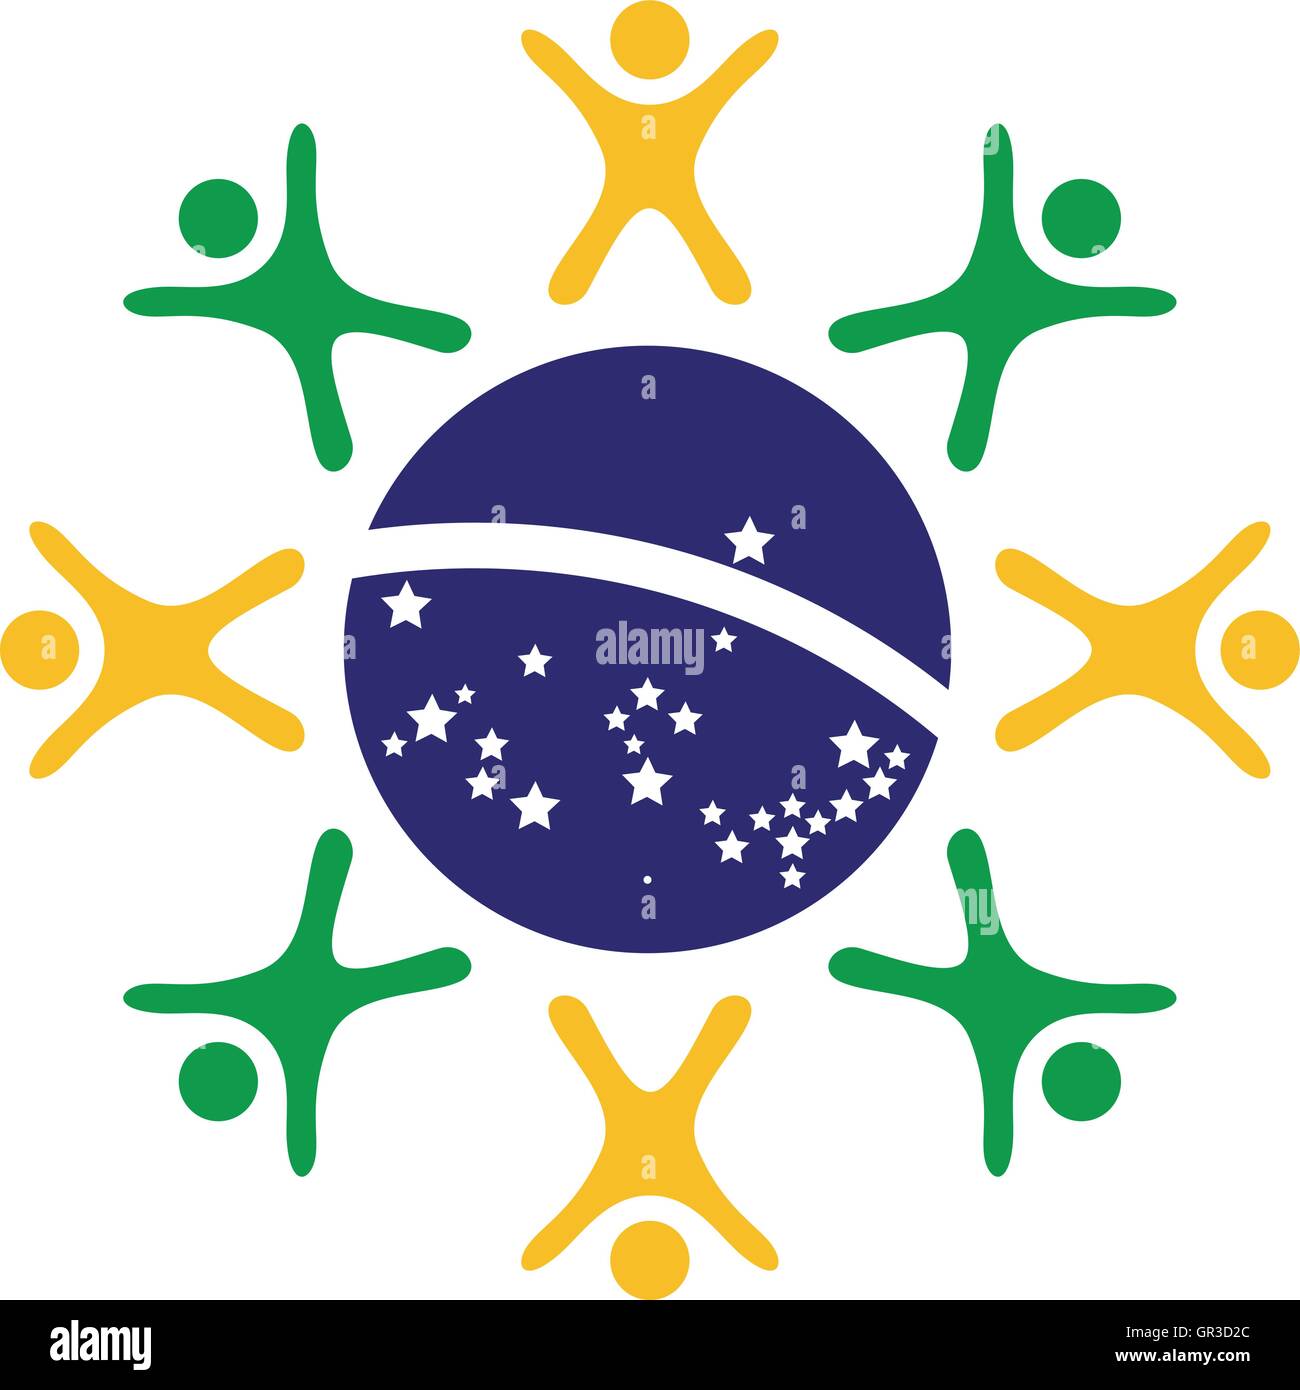 Menschen-Einheit-Konzept in der Form und Farben der brasilianischen Flagge Stock Vektor